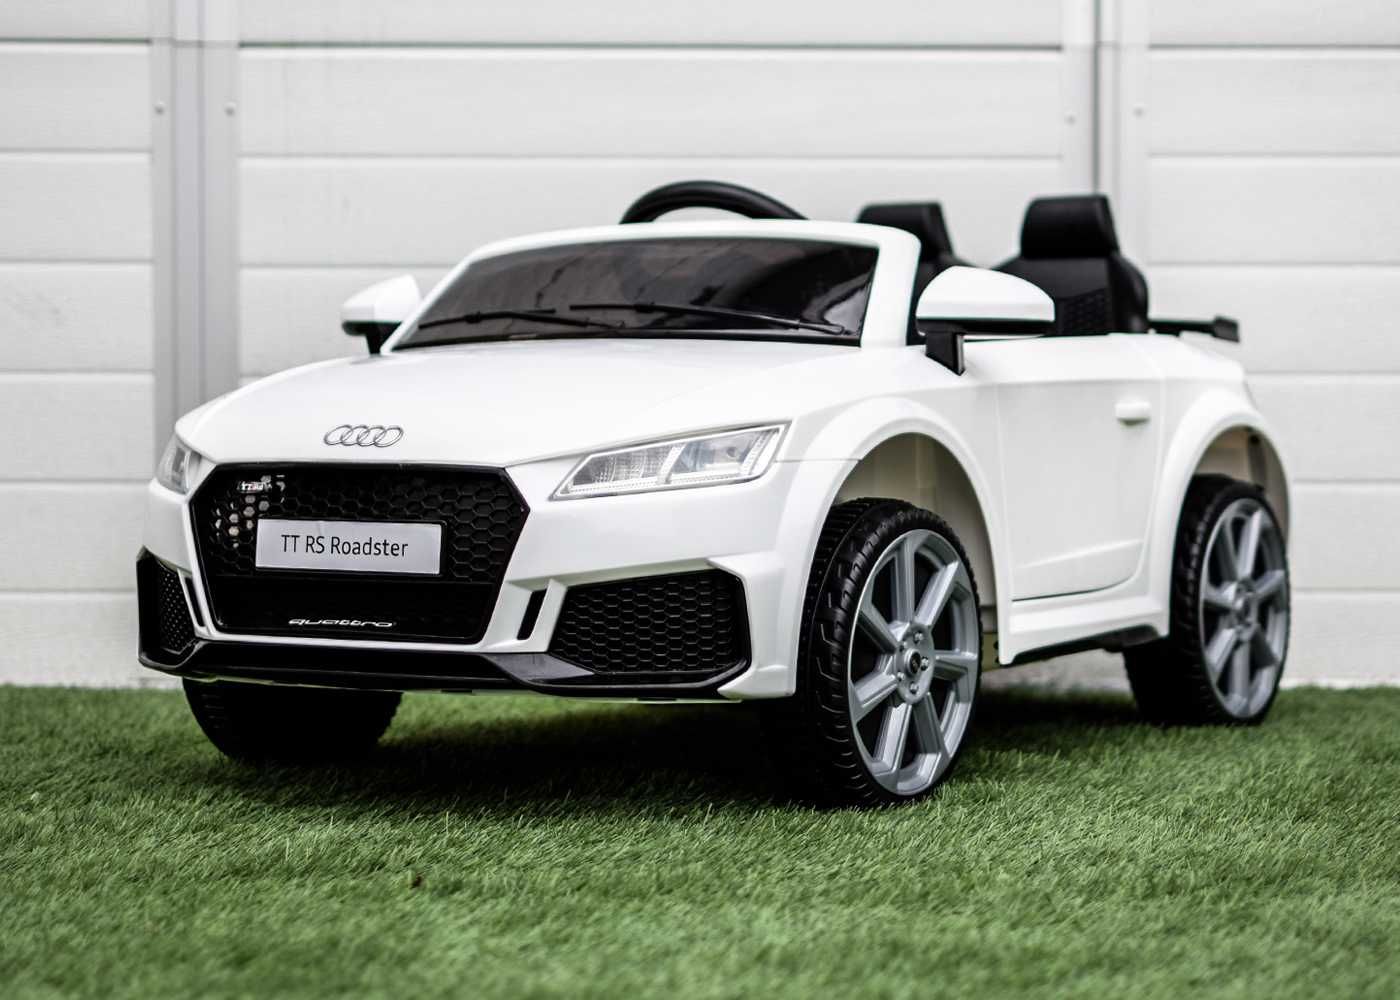 Masinuta electrica pentru copii, Audi TTRS 2x 35W 12V, BT #white